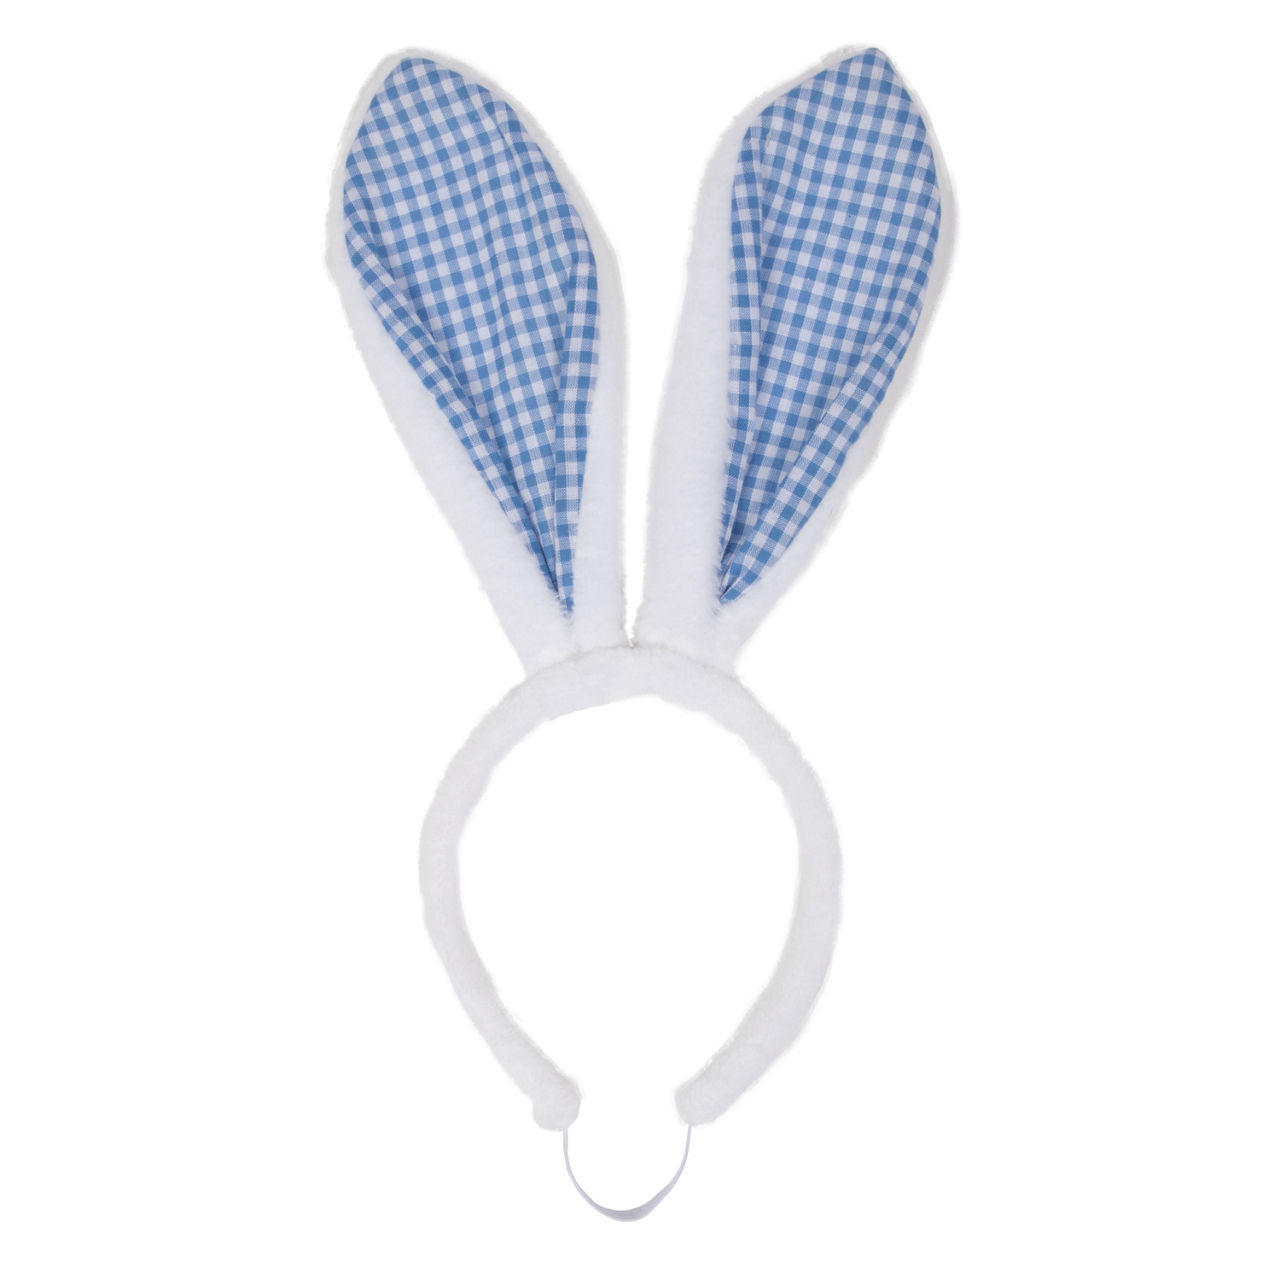 Pet Small/Medium White & Blue Gingham Fuzzy Bunny Ear Headband